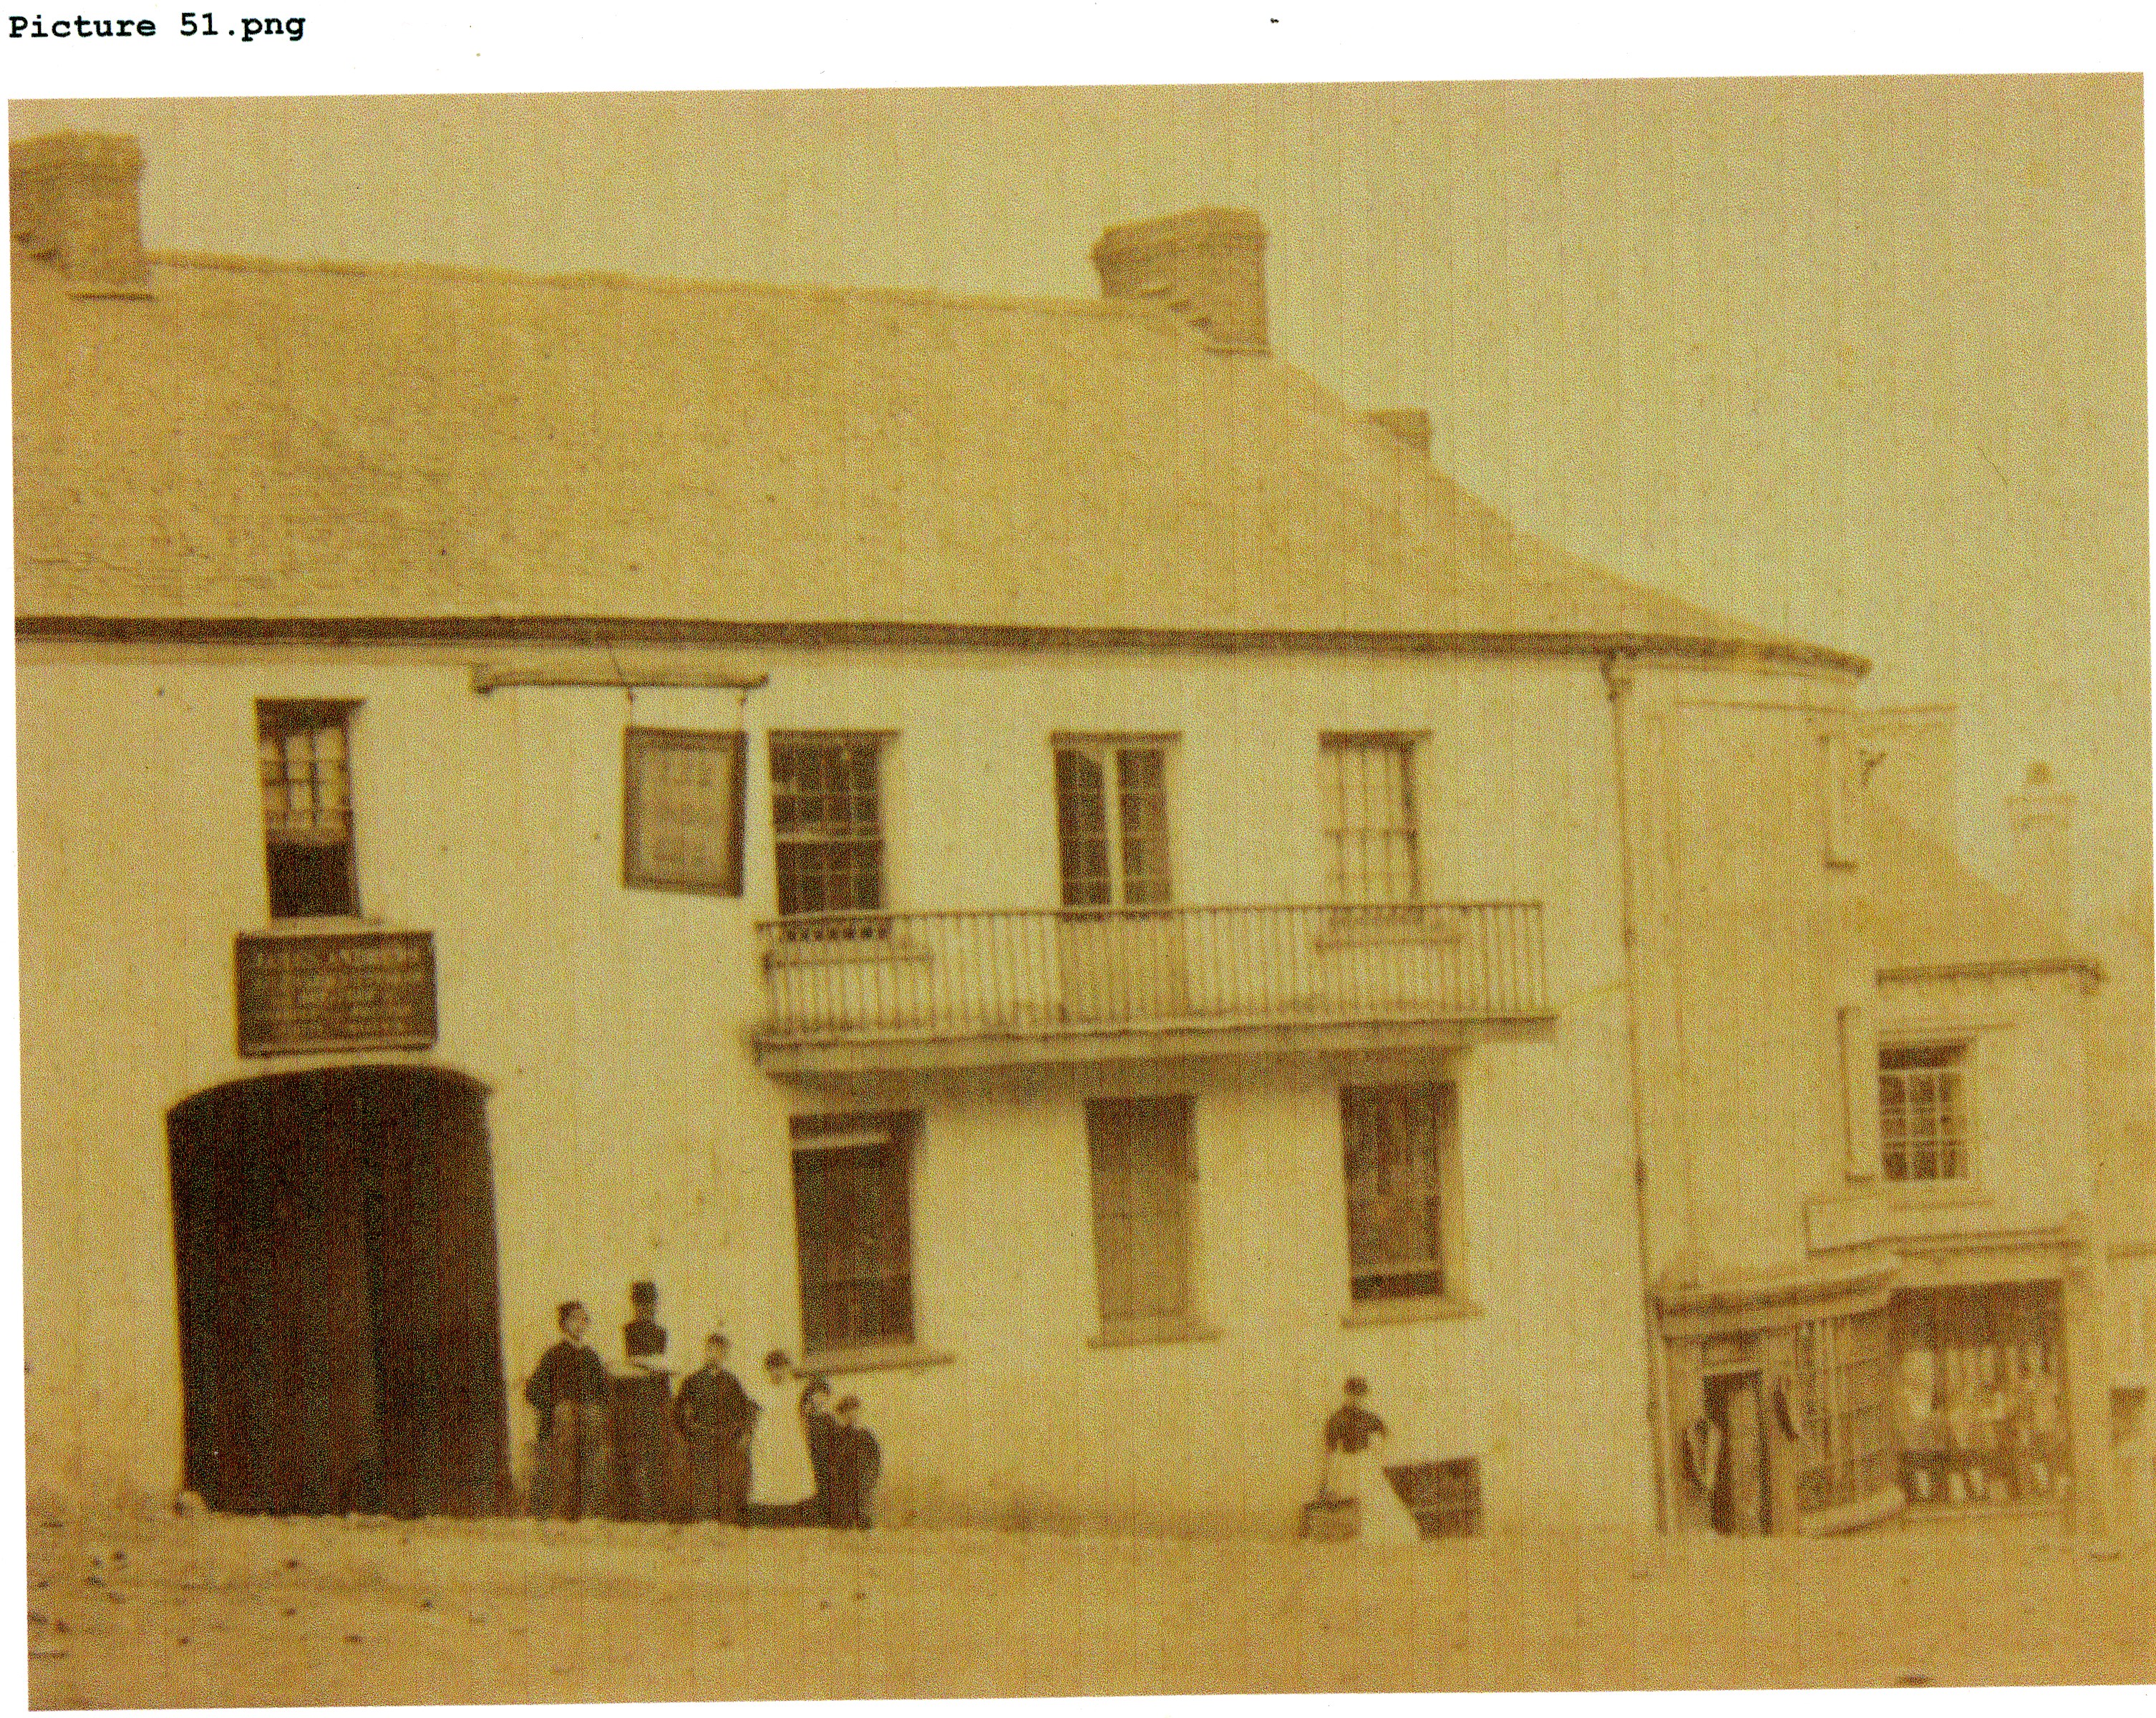 Market St, London Inn c. 1880